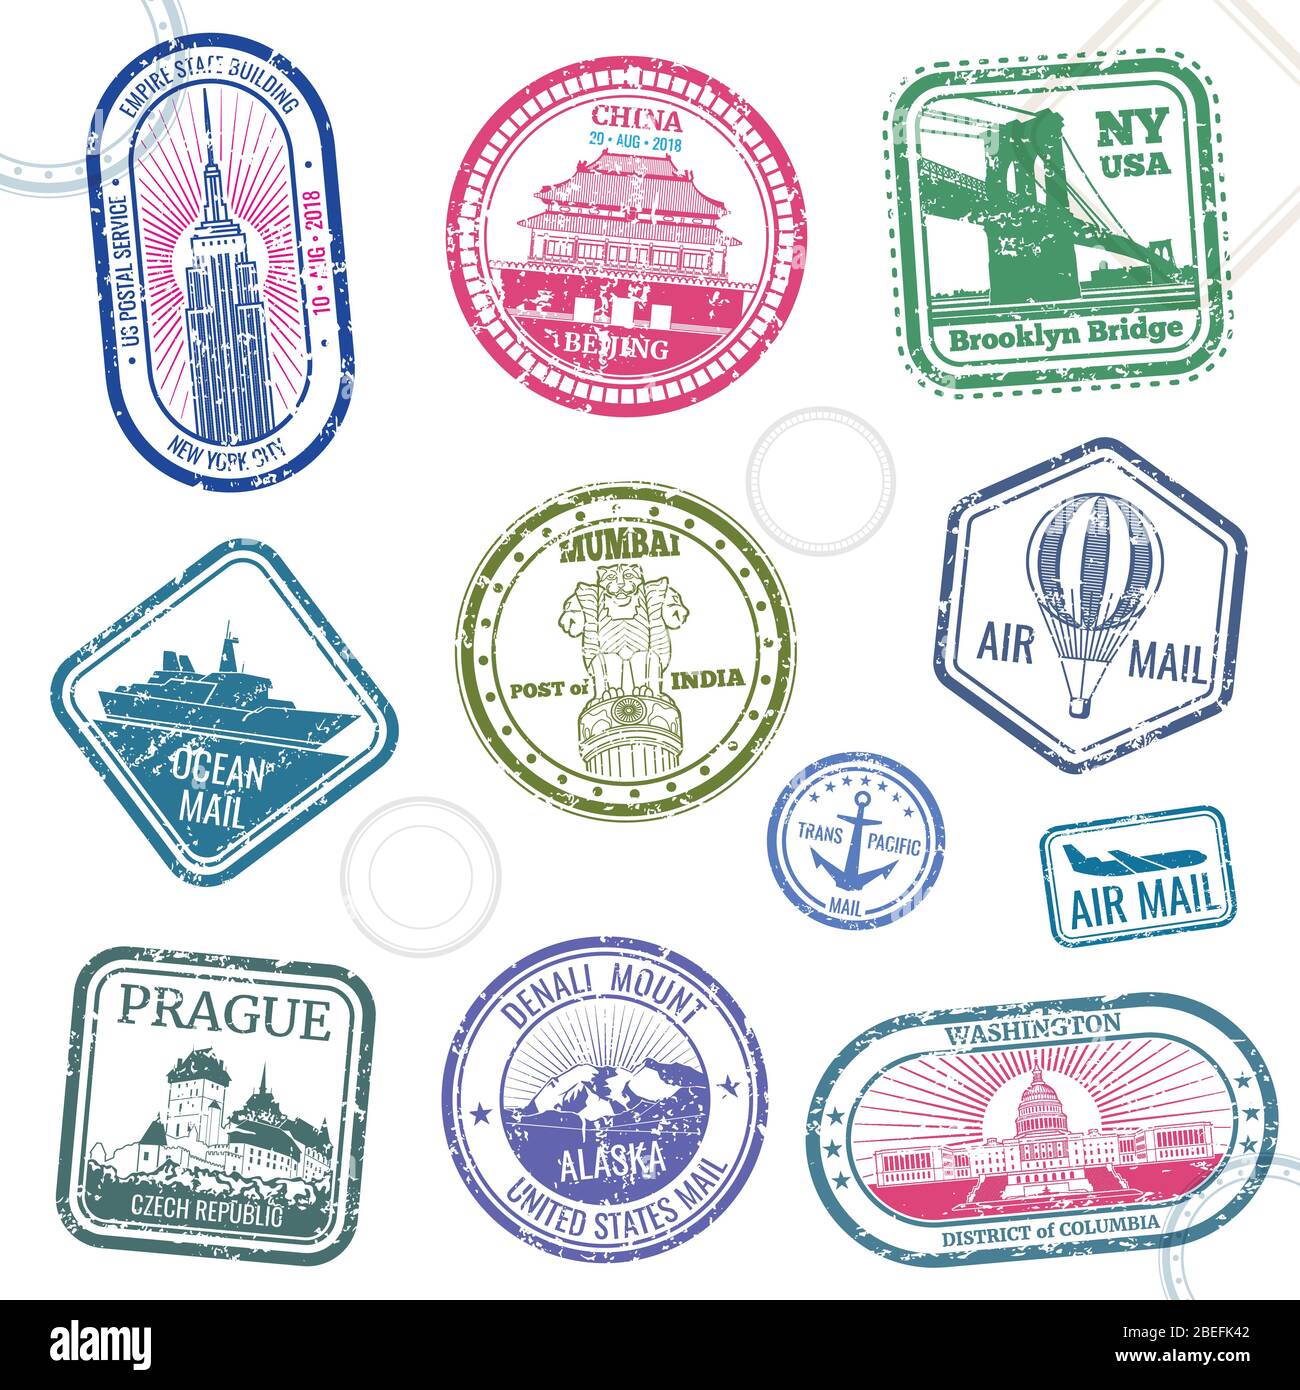 Vintage Pass Reise Vektor-Briefmarken mit internationalen Symbolen und berühmte Marke. Reise Ankunft Stempel für Pass, internationale nationale Grenze Abbildung Stock Vektor